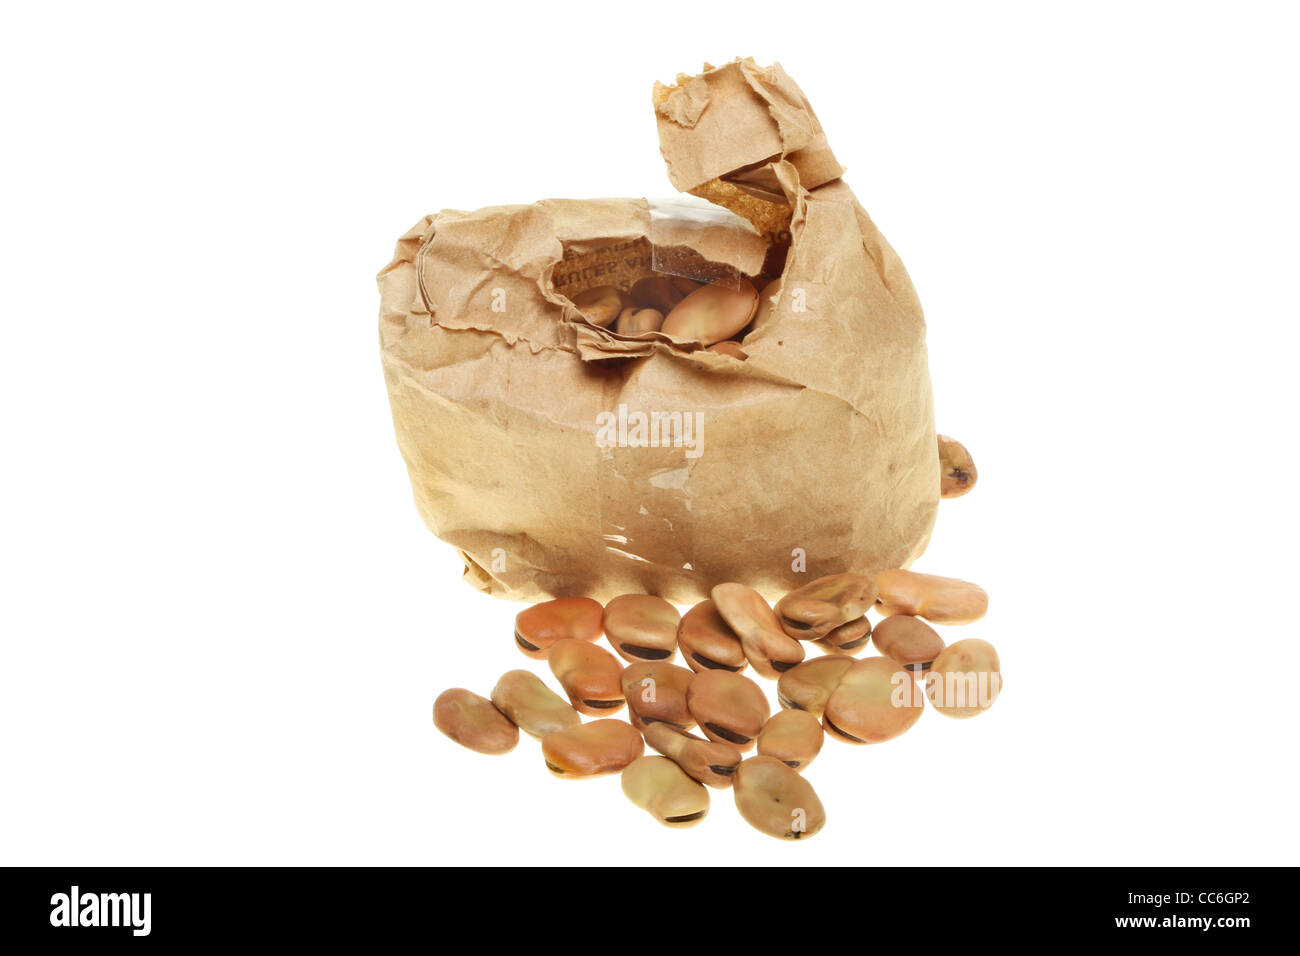 Bolsa de papel marrón lleno de semillas de haba aislado contra un blanco Foto de stock